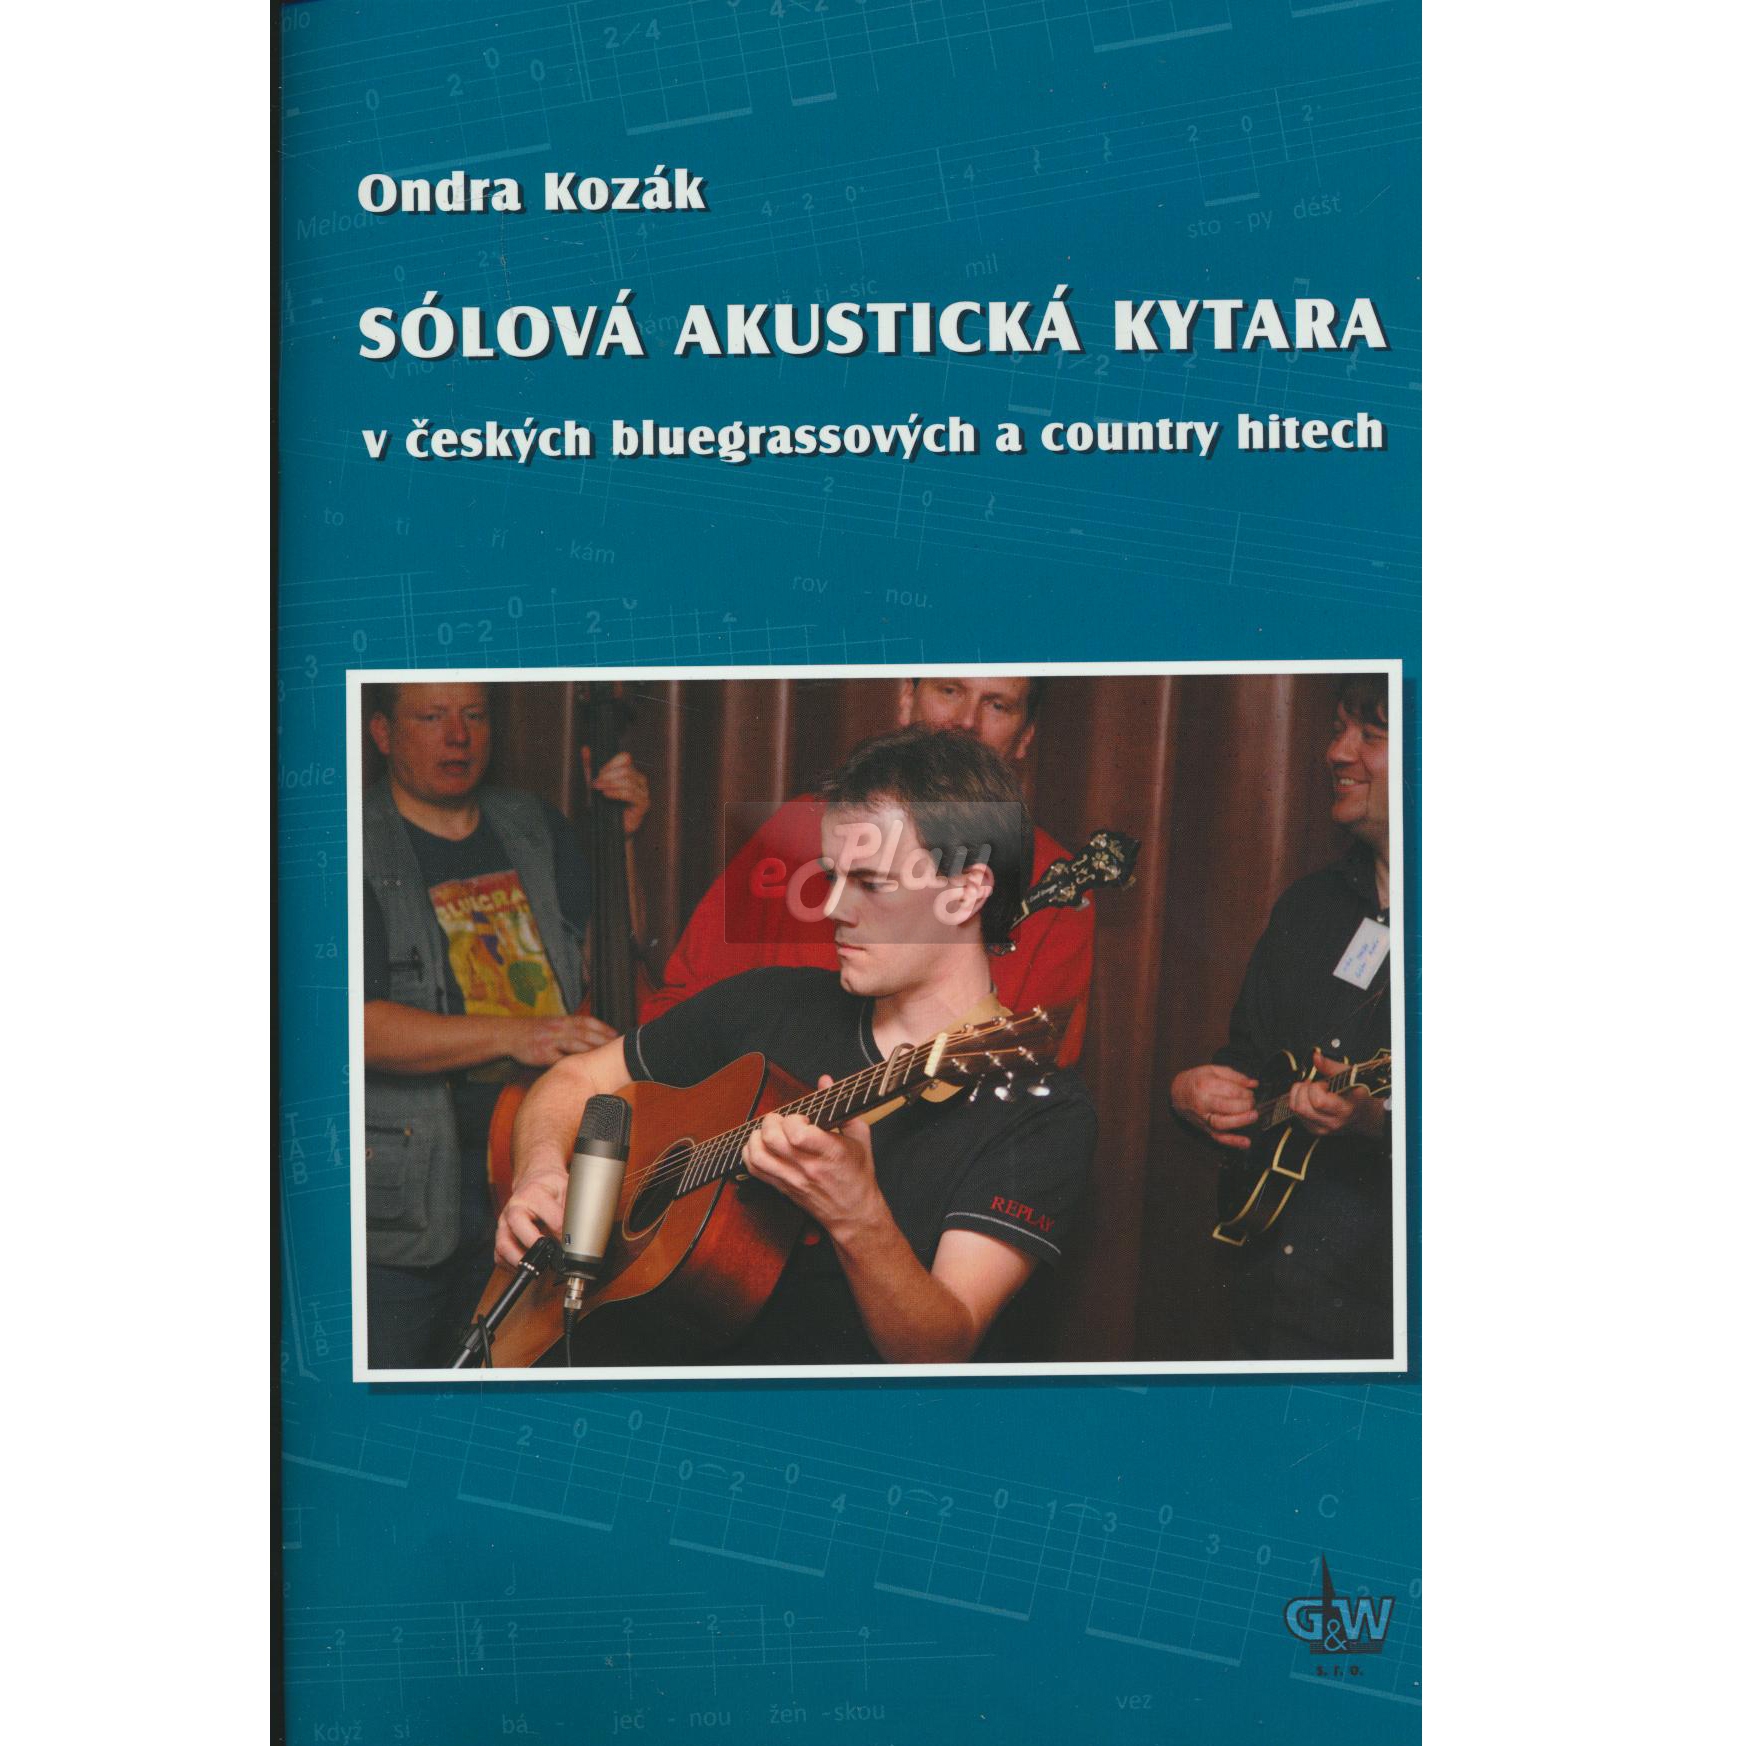 Sólová akustická kytara - Ondra Kozák | Obrázok 1 | eplay.sk